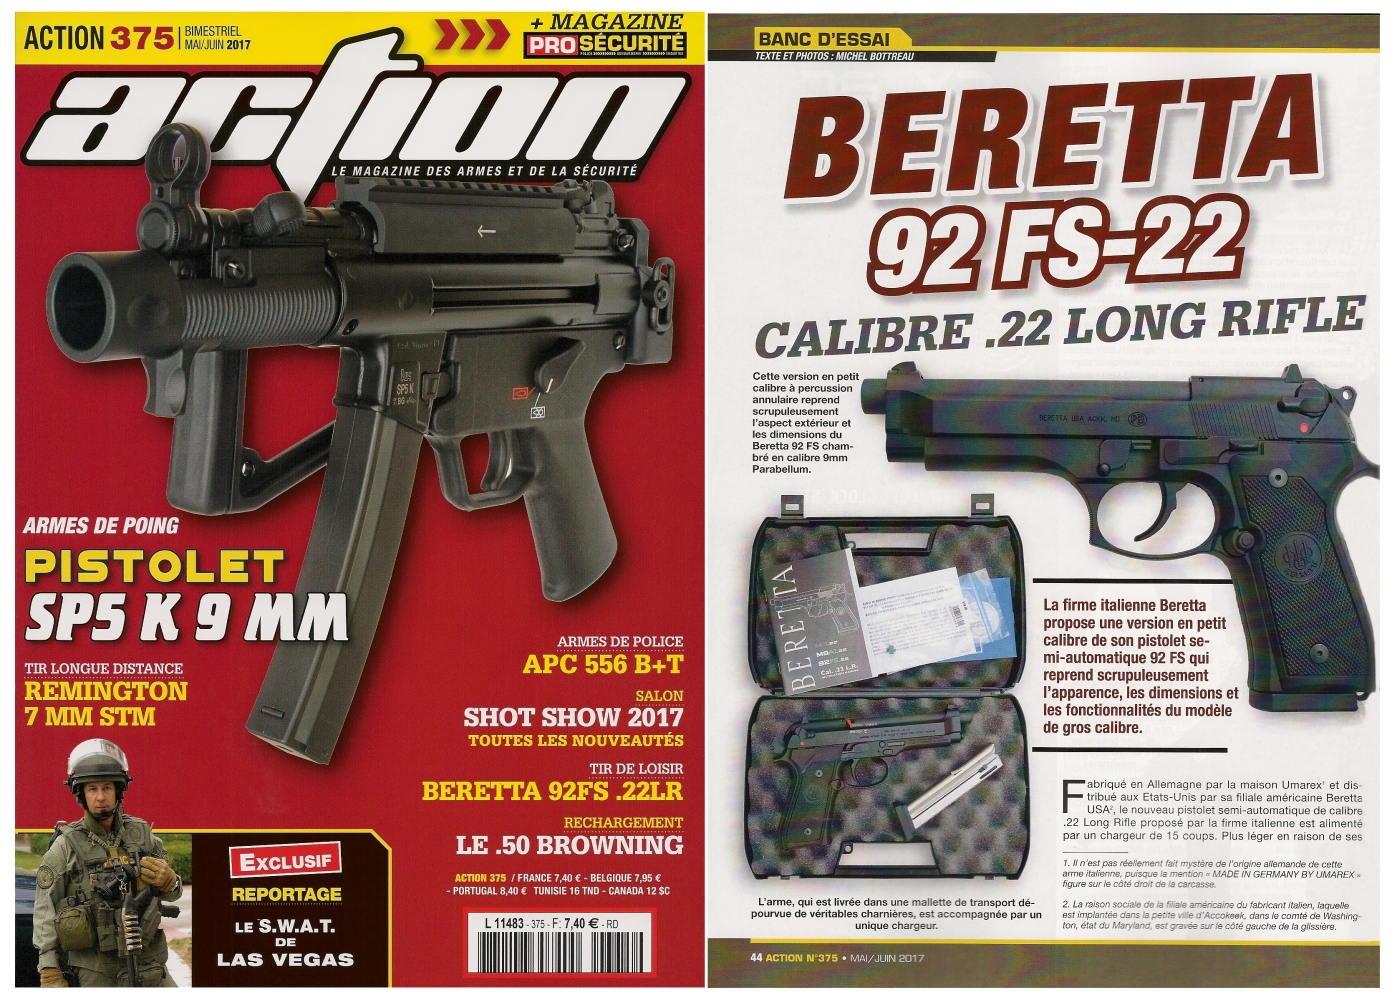 Le banc d’essai du pistolet Beretta 92 FS-22 a été publié sur 6 pages dans le magazine Action n°375 (mai/juin 2017). 